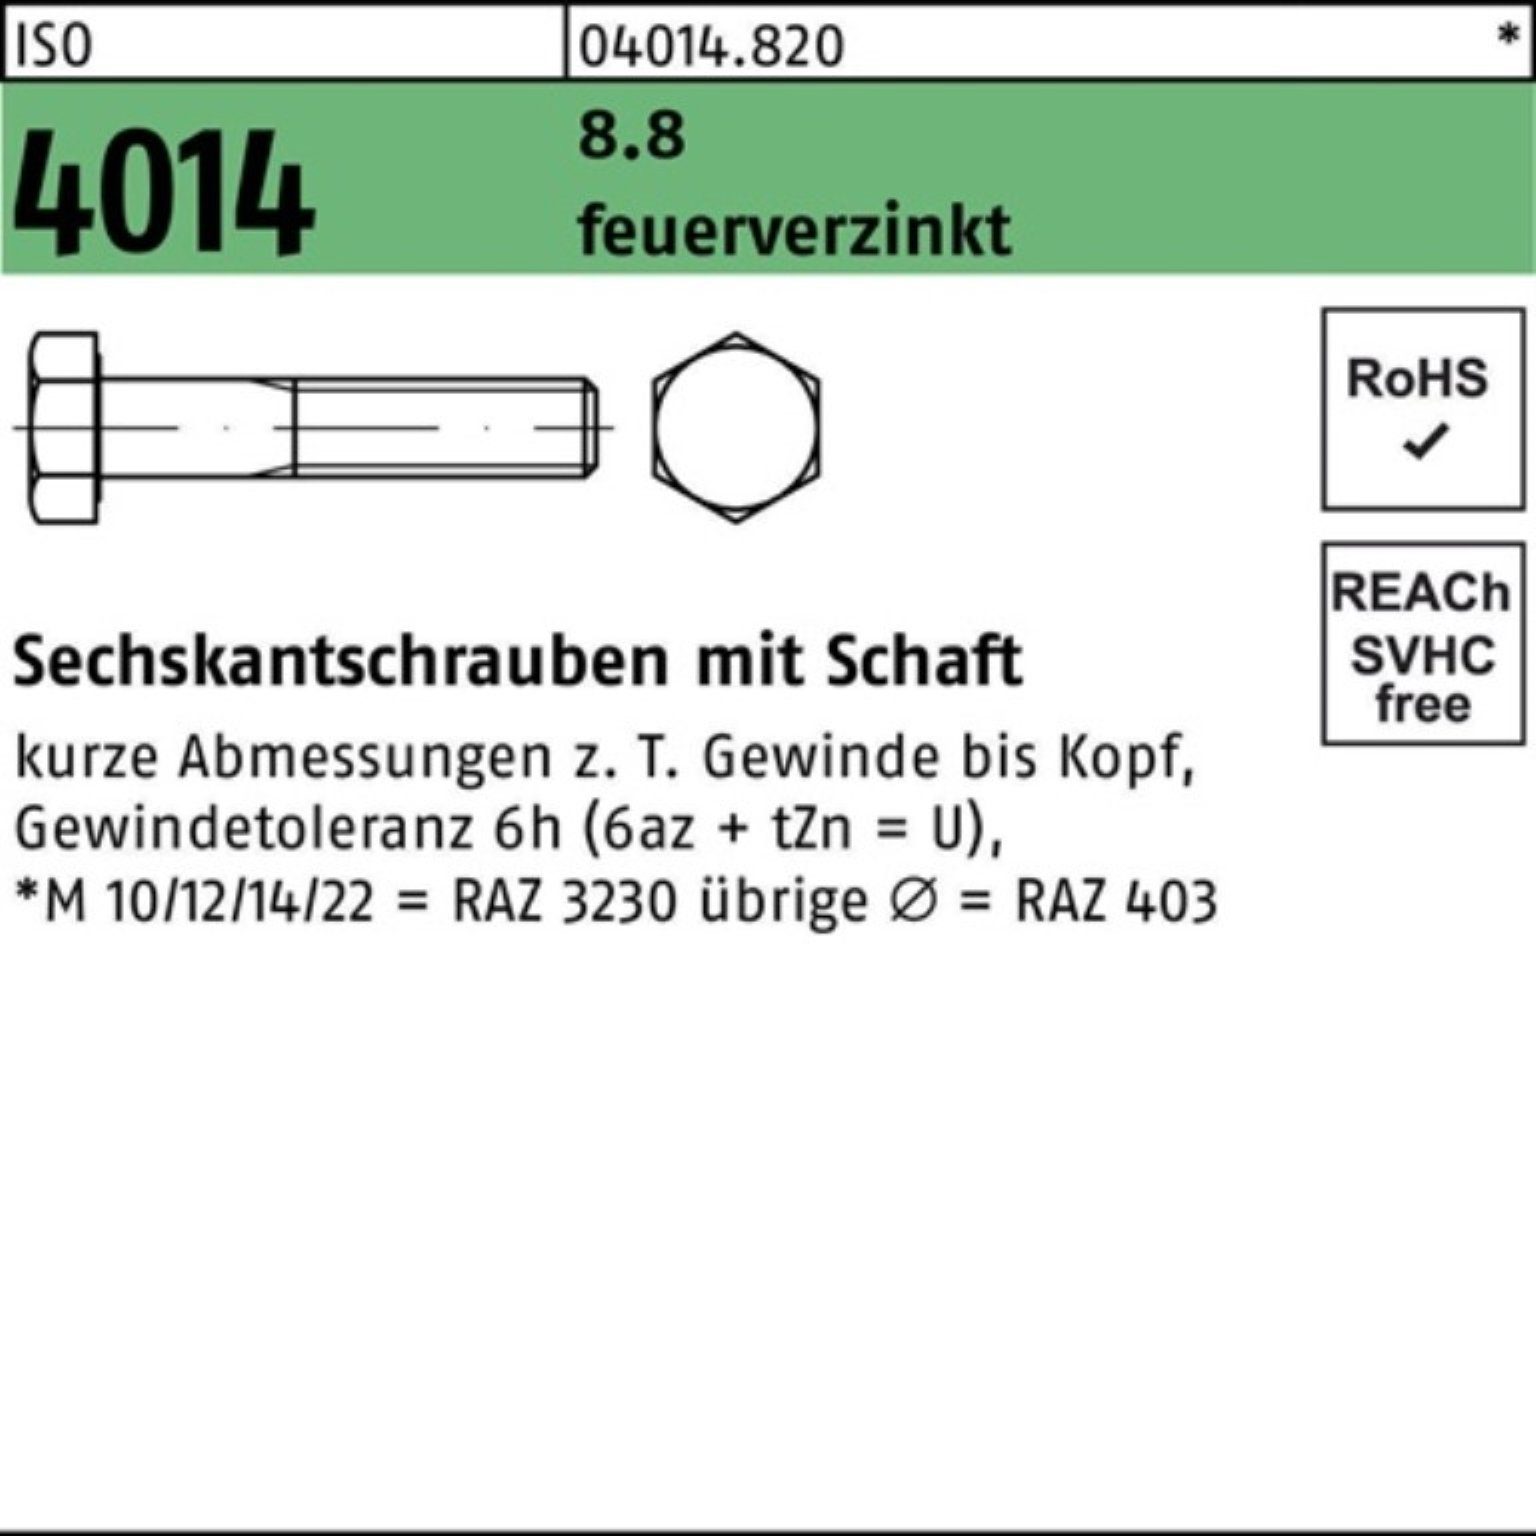 Bufab Sechskantschraube 100er Pack Sechskantschraube ISO 4014 Schaft M30x 120 8.8 feuerverz. 1